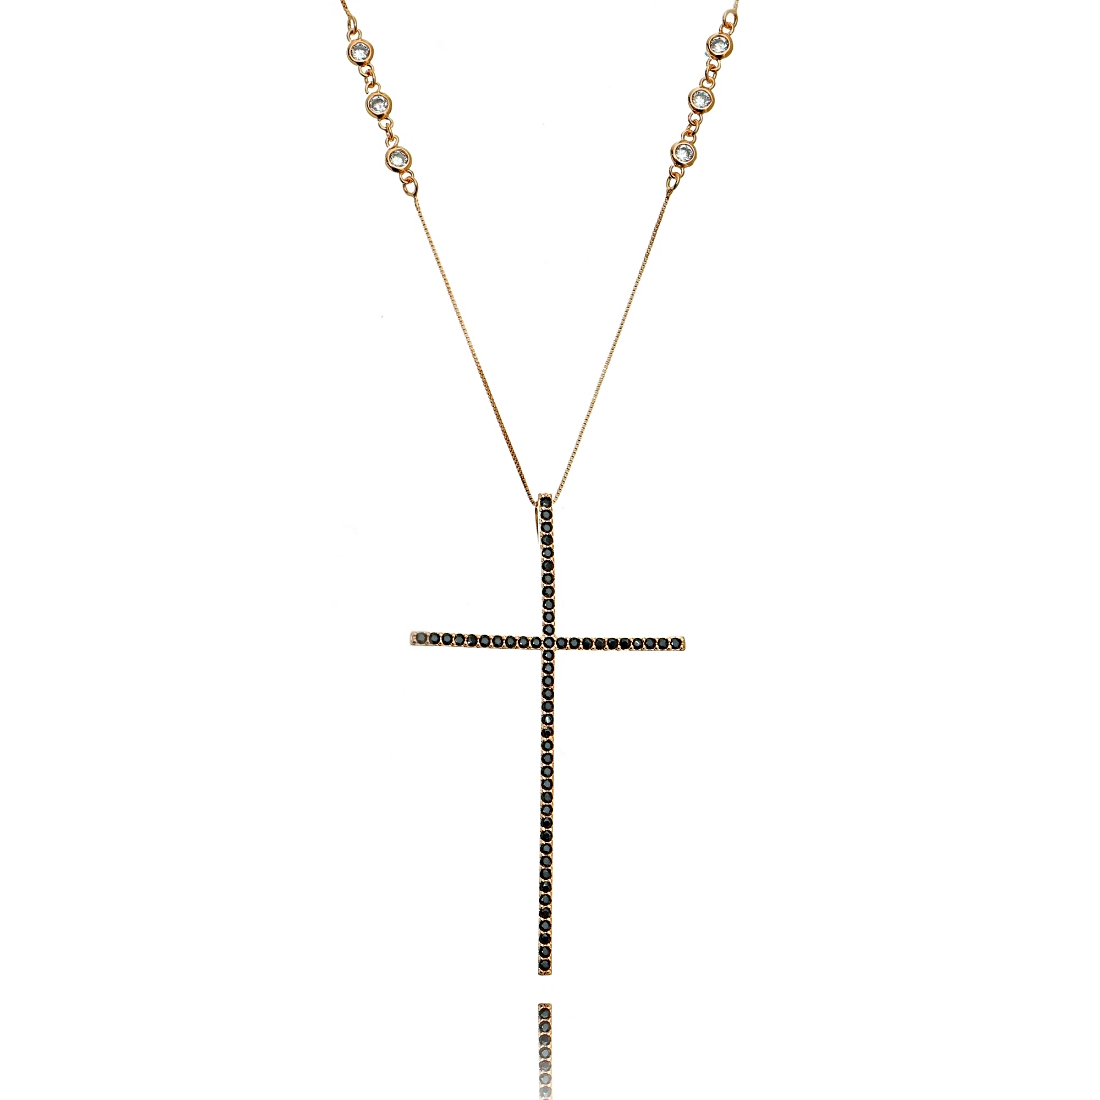 Colar Crucifixo Preto Grande Corrente com 8 Pontos de Luz Zircônia Semijoia em Ouro Rosé  - Soloyou